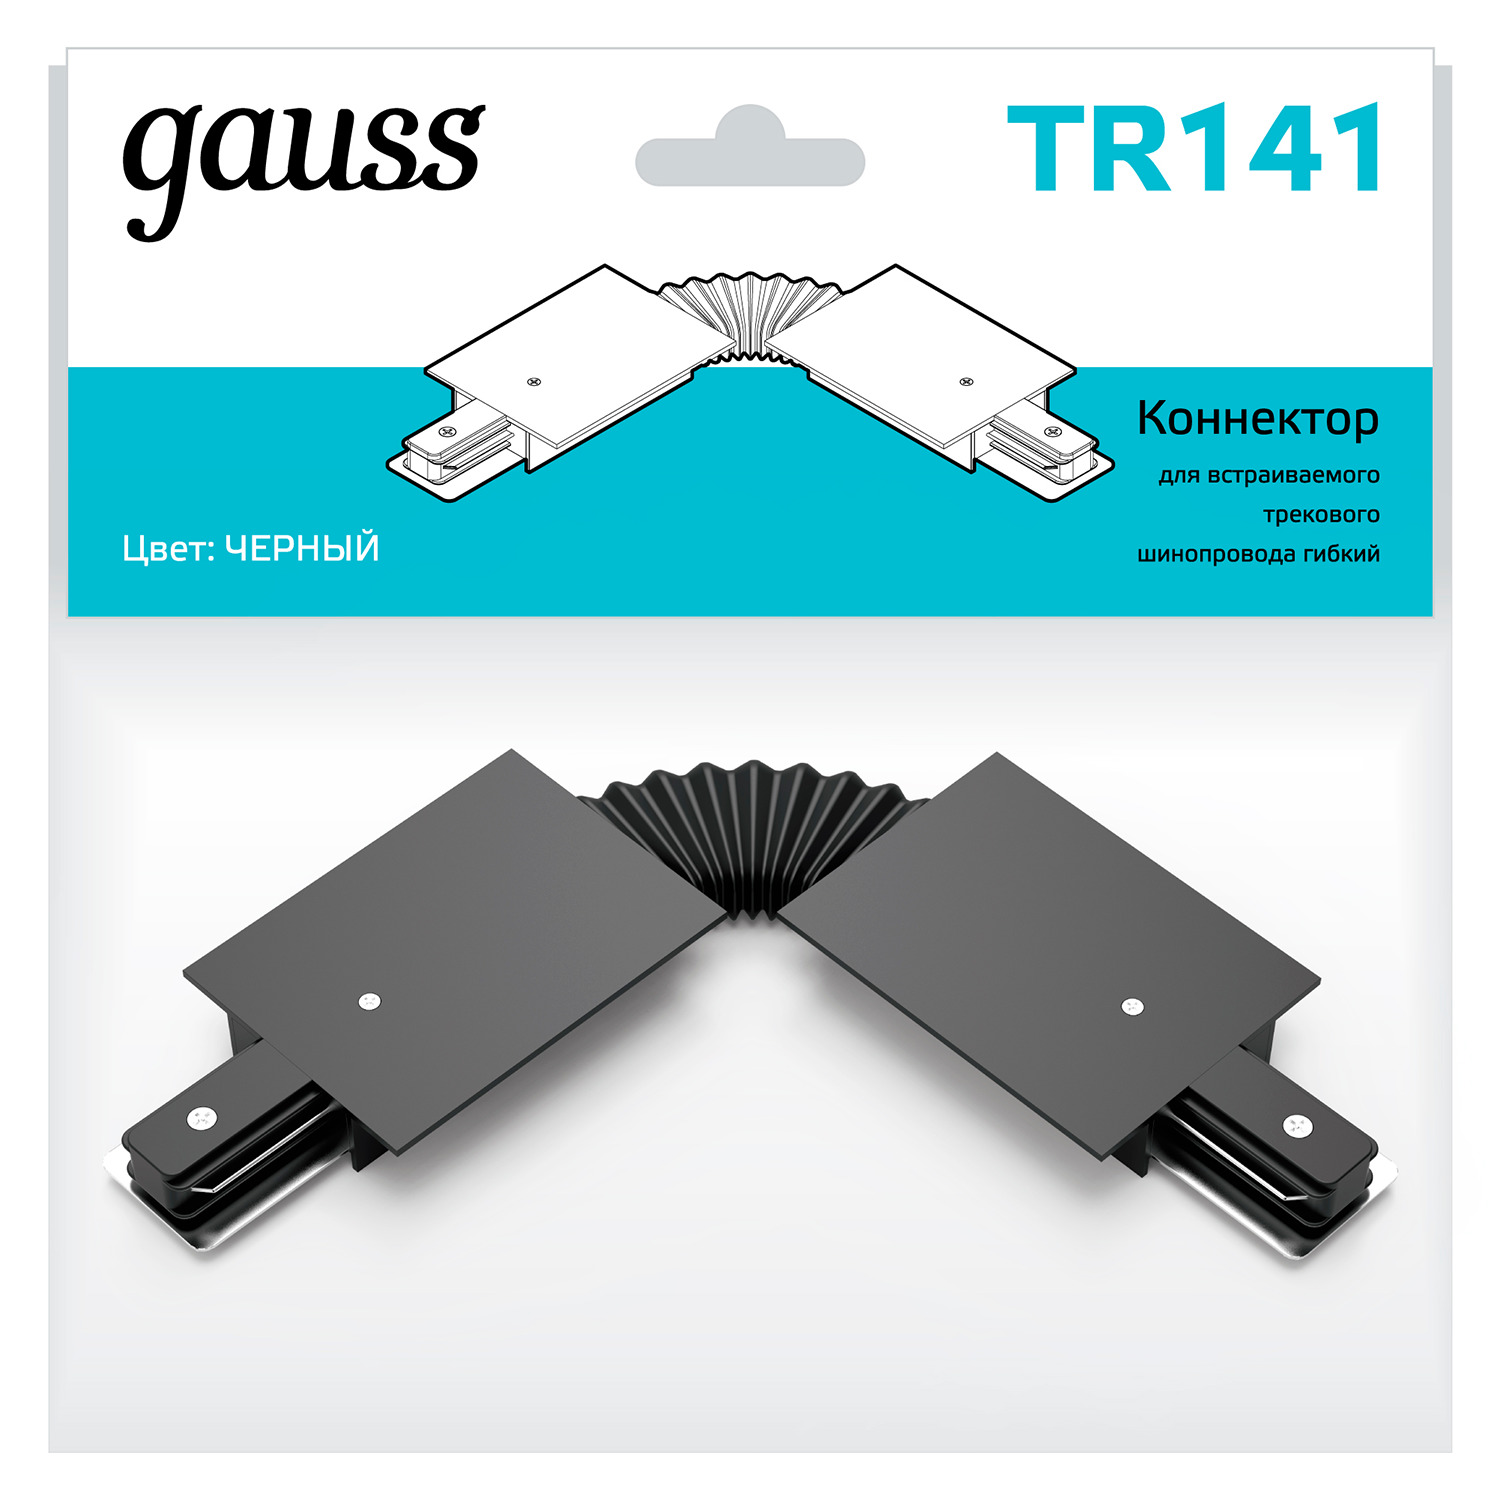 Коннектор Gauss для встраиваемых трековых шинопроводов гибкий (I) черный коннектор gauss для трековых шинопроводов гибкий i